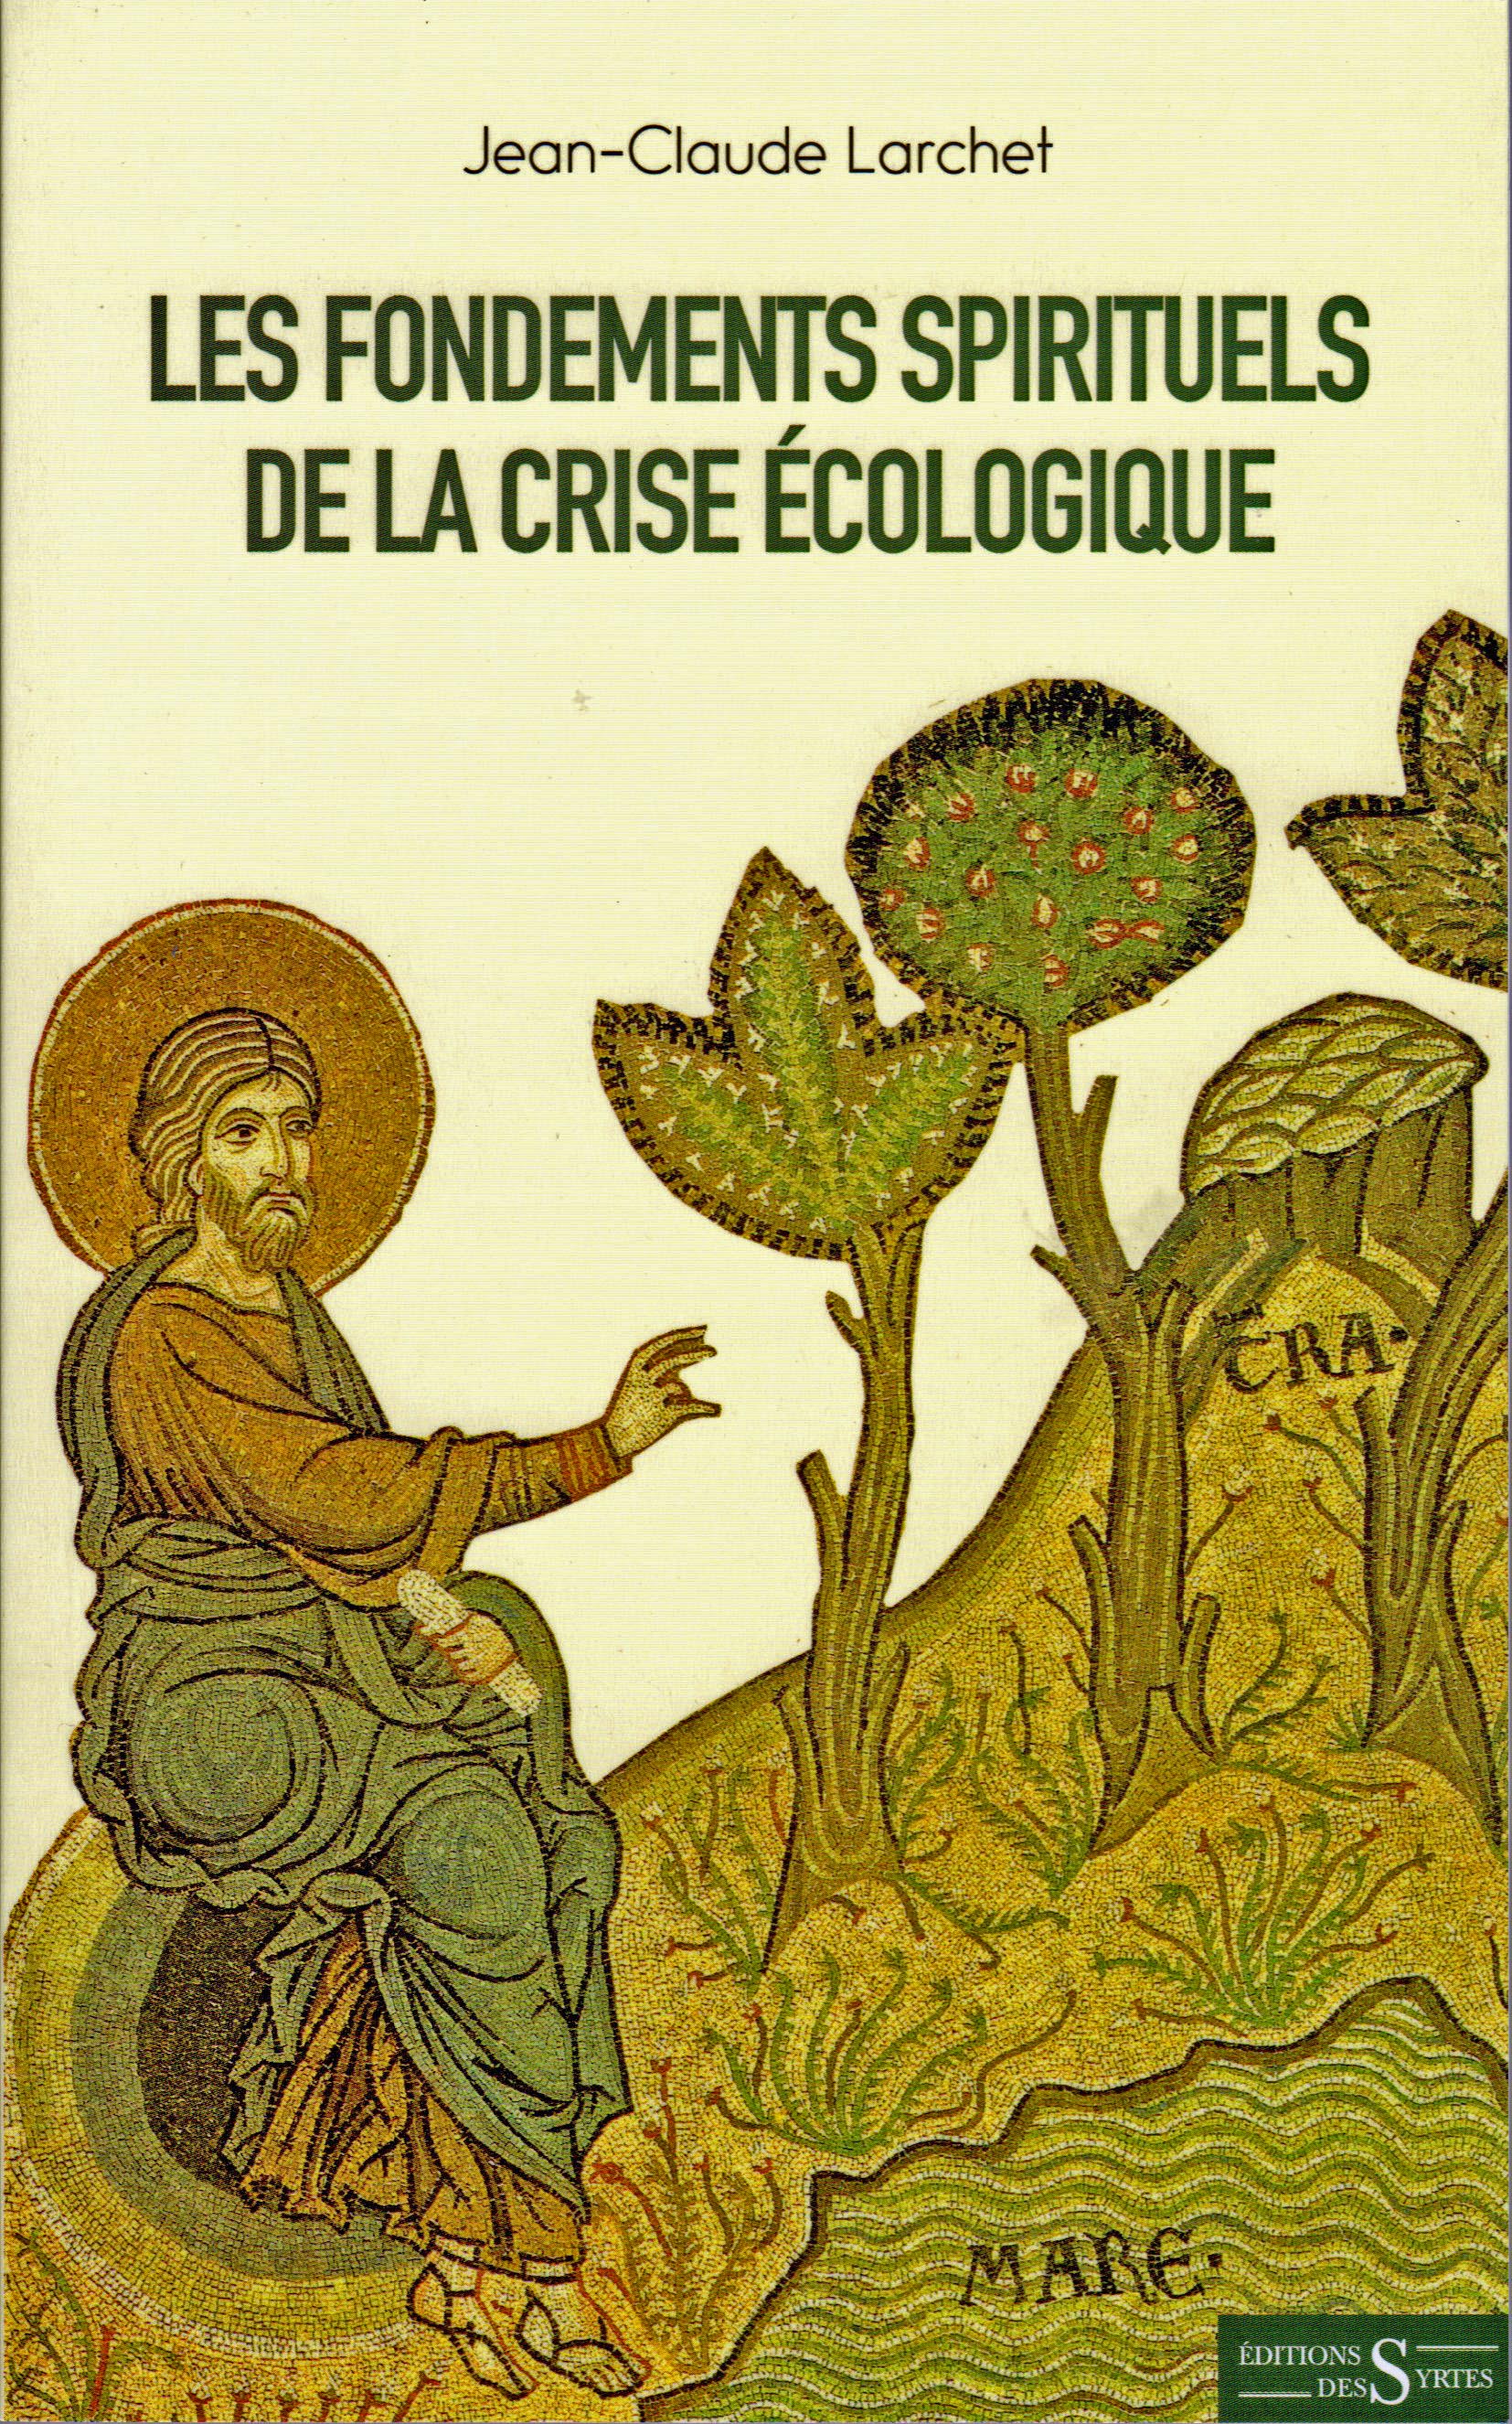 Un nouveau livre de Jean-Claude Larchet: Les fondements spirituels de la crise écologique